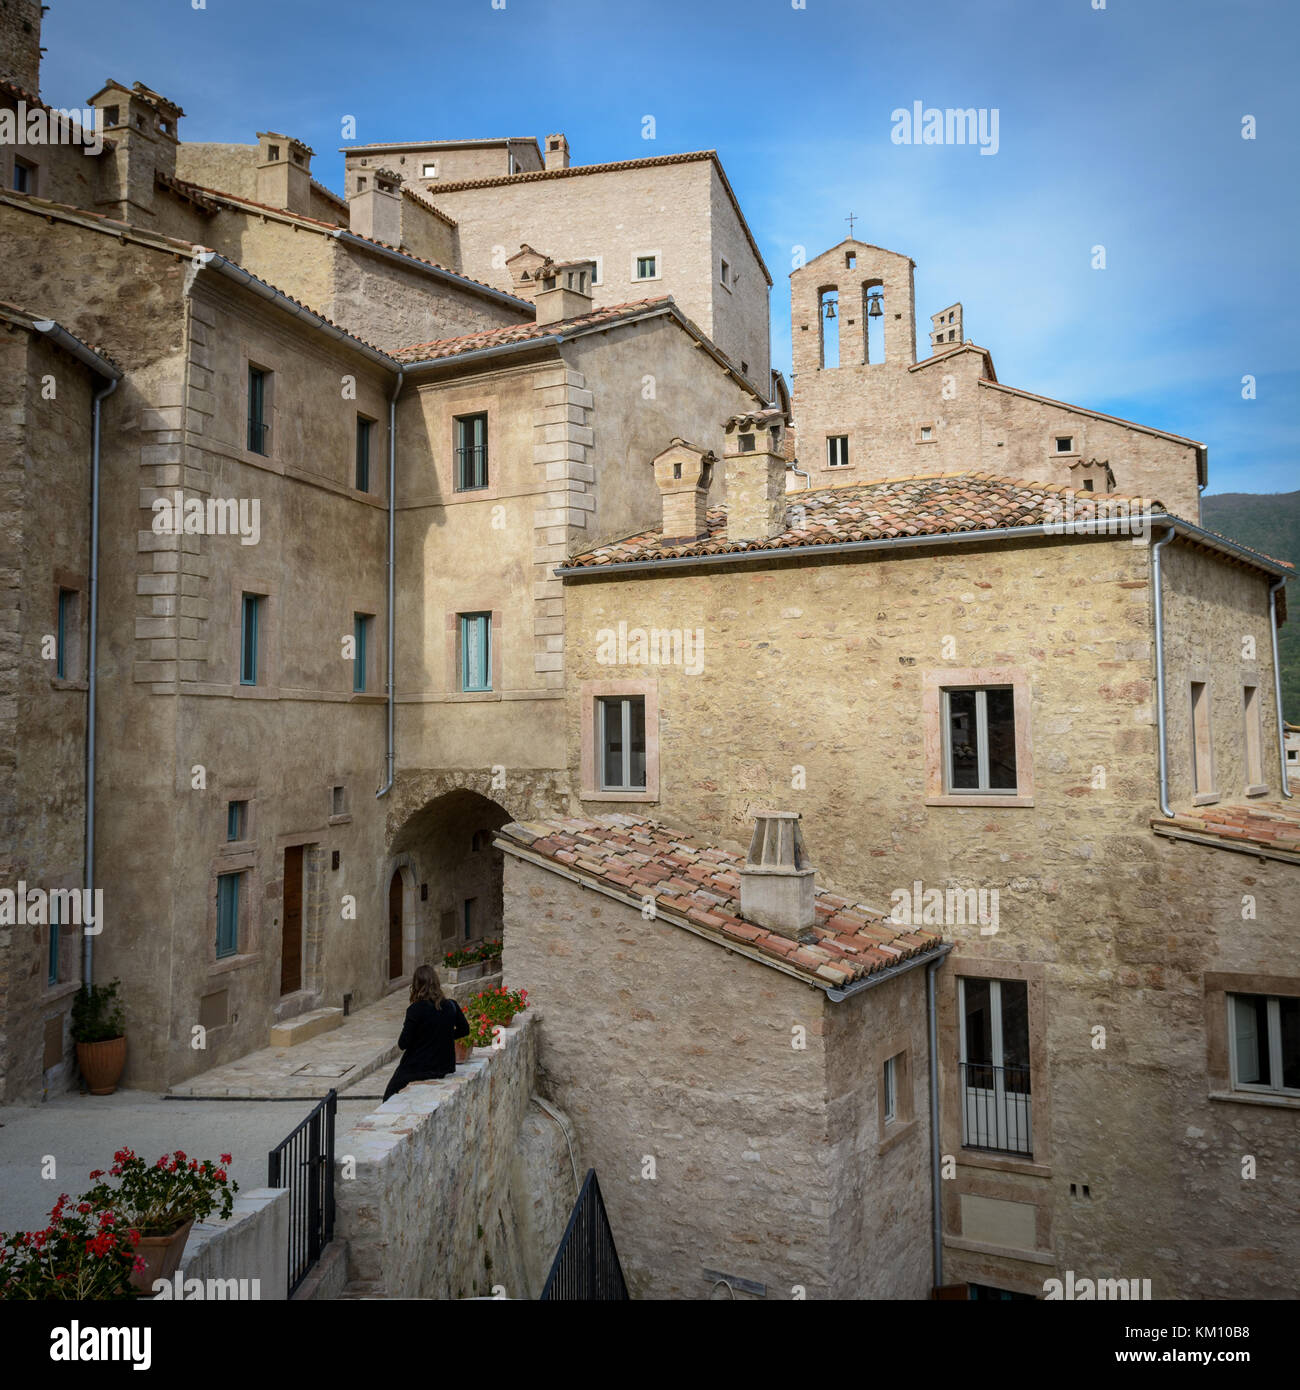 View of the Castello di Postignano in the Umbria region in Italy. July 2017. Square format. Stock Photo